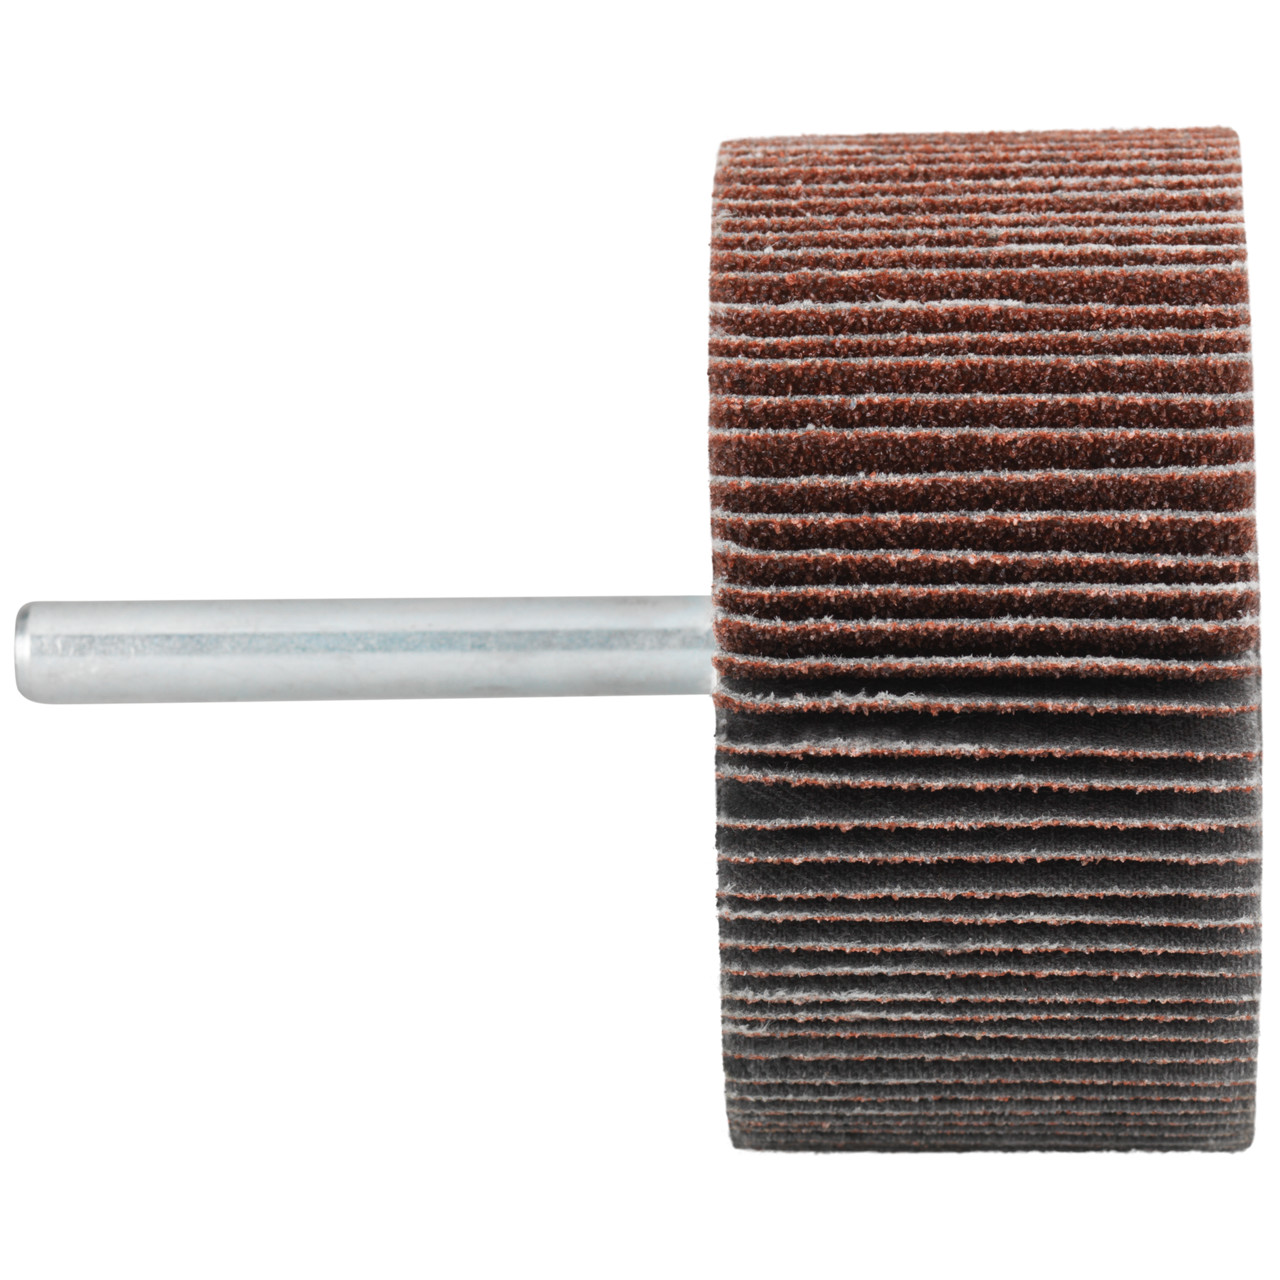 Tyrolit A-P01 C X Pennen DxD 60x40 Voor staal, roestvast staal en non-ferrometalen, P240, vorm: 52LA, Art. 816969